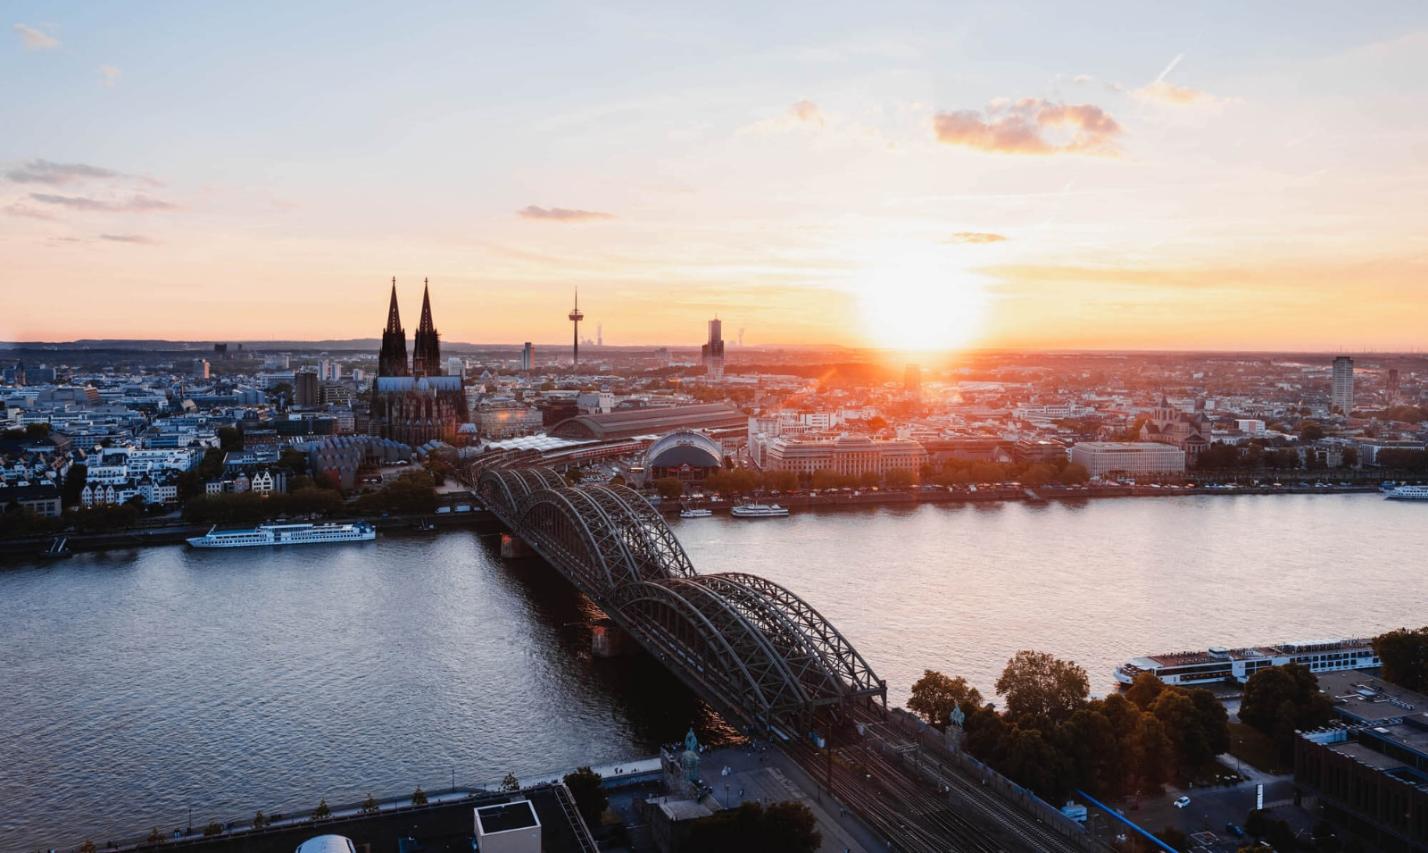 Sonnenuntergang fotografiert von der linken Rheinseite. Man sieht den Kölner Dom und die Hohenzollernbrücke.